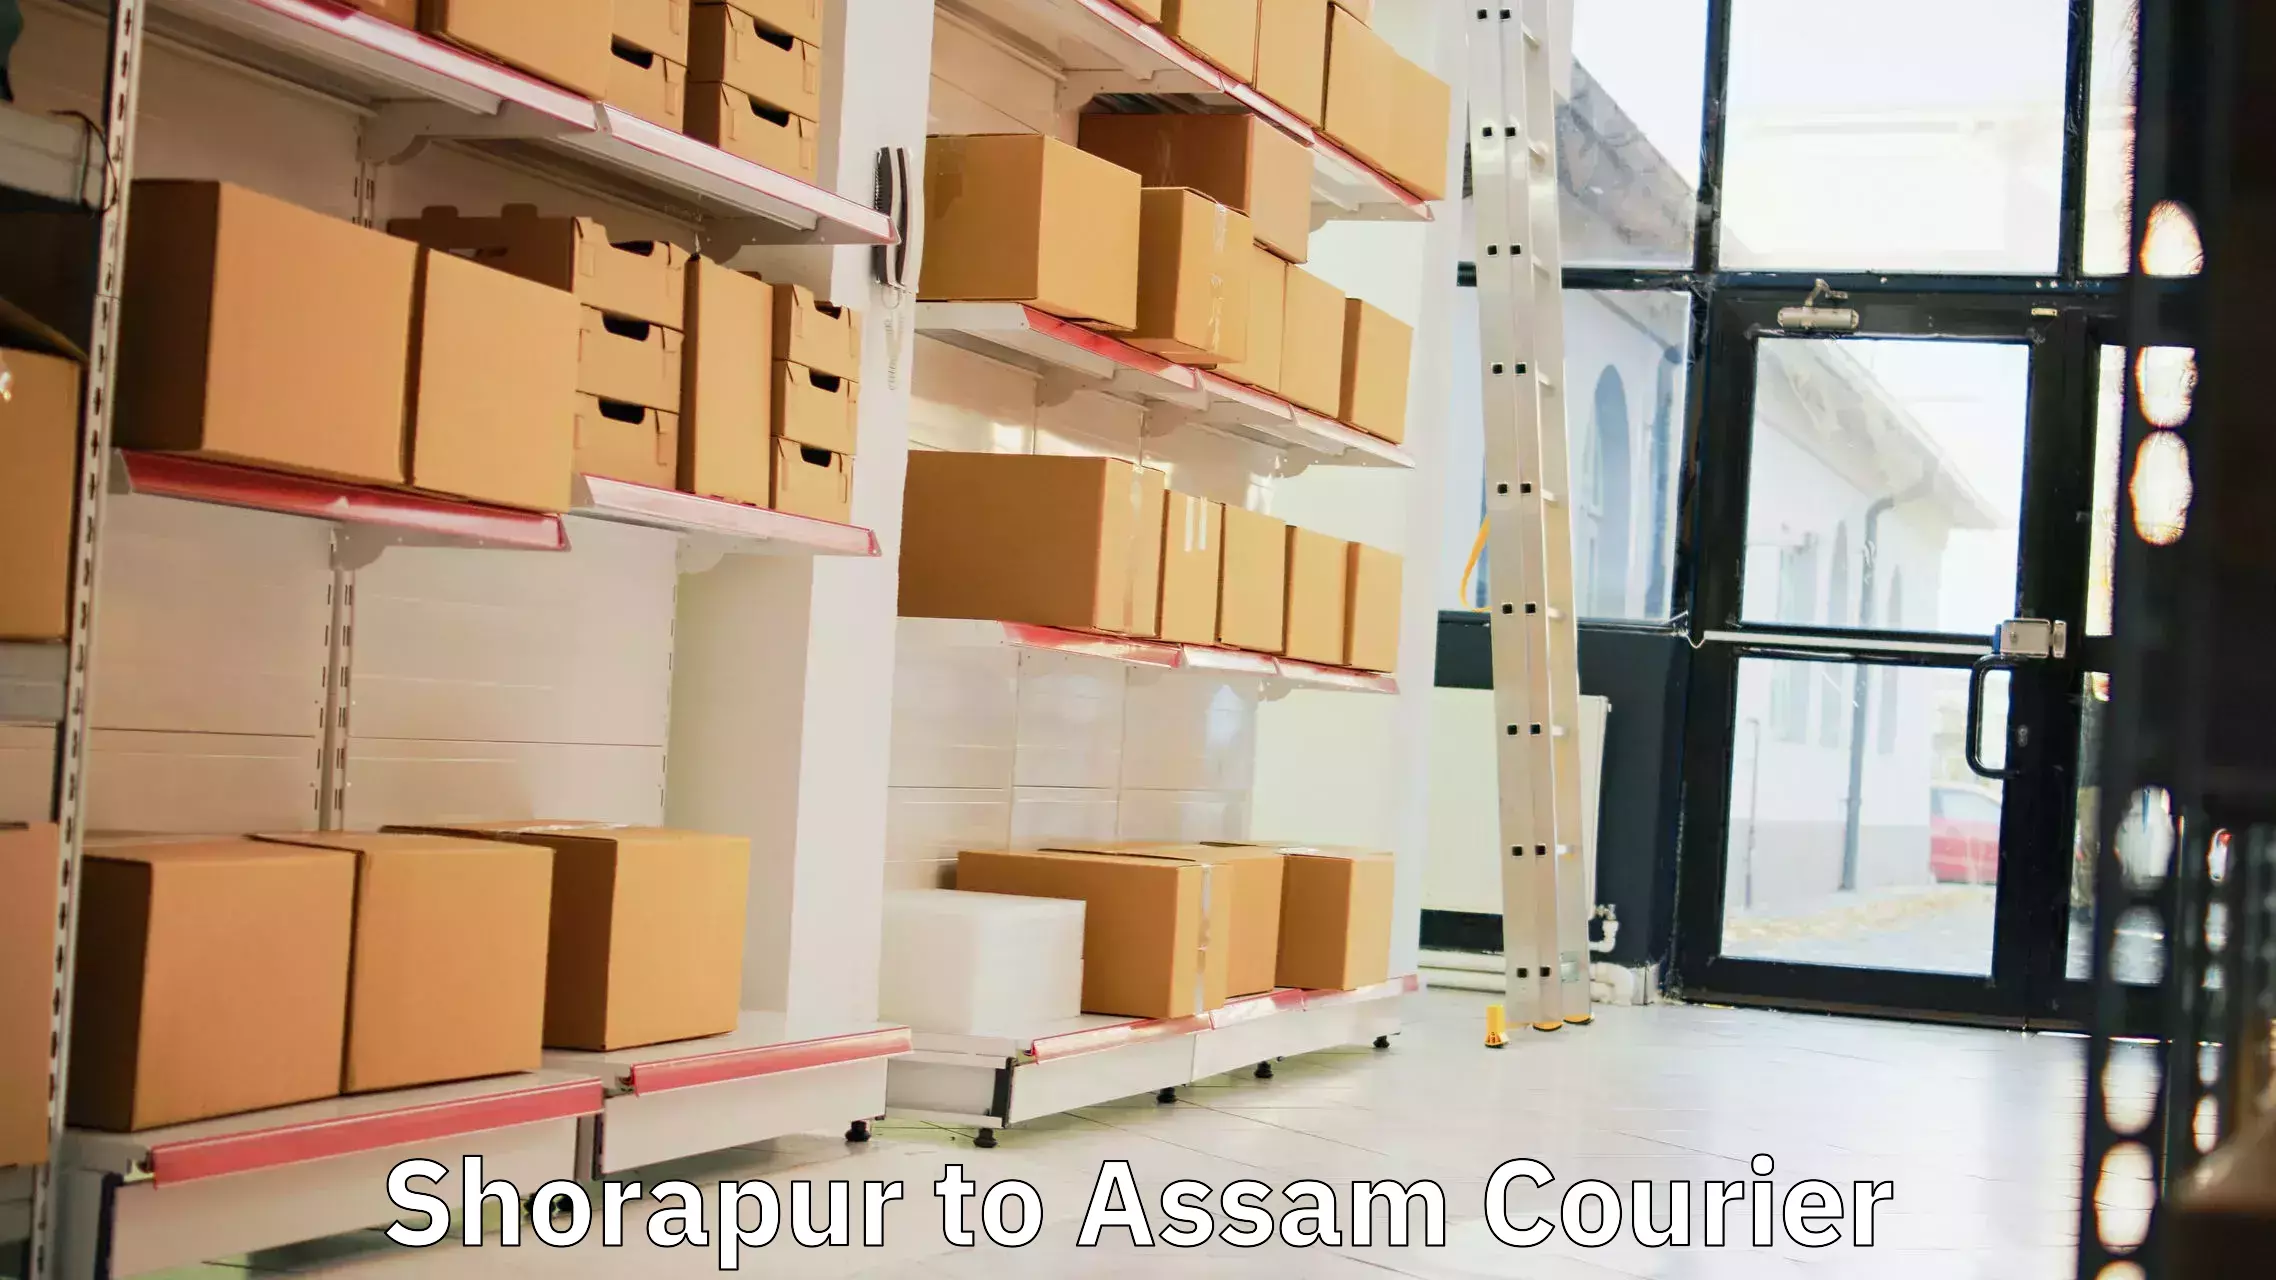 Modern courier technology Shorapur to Assam